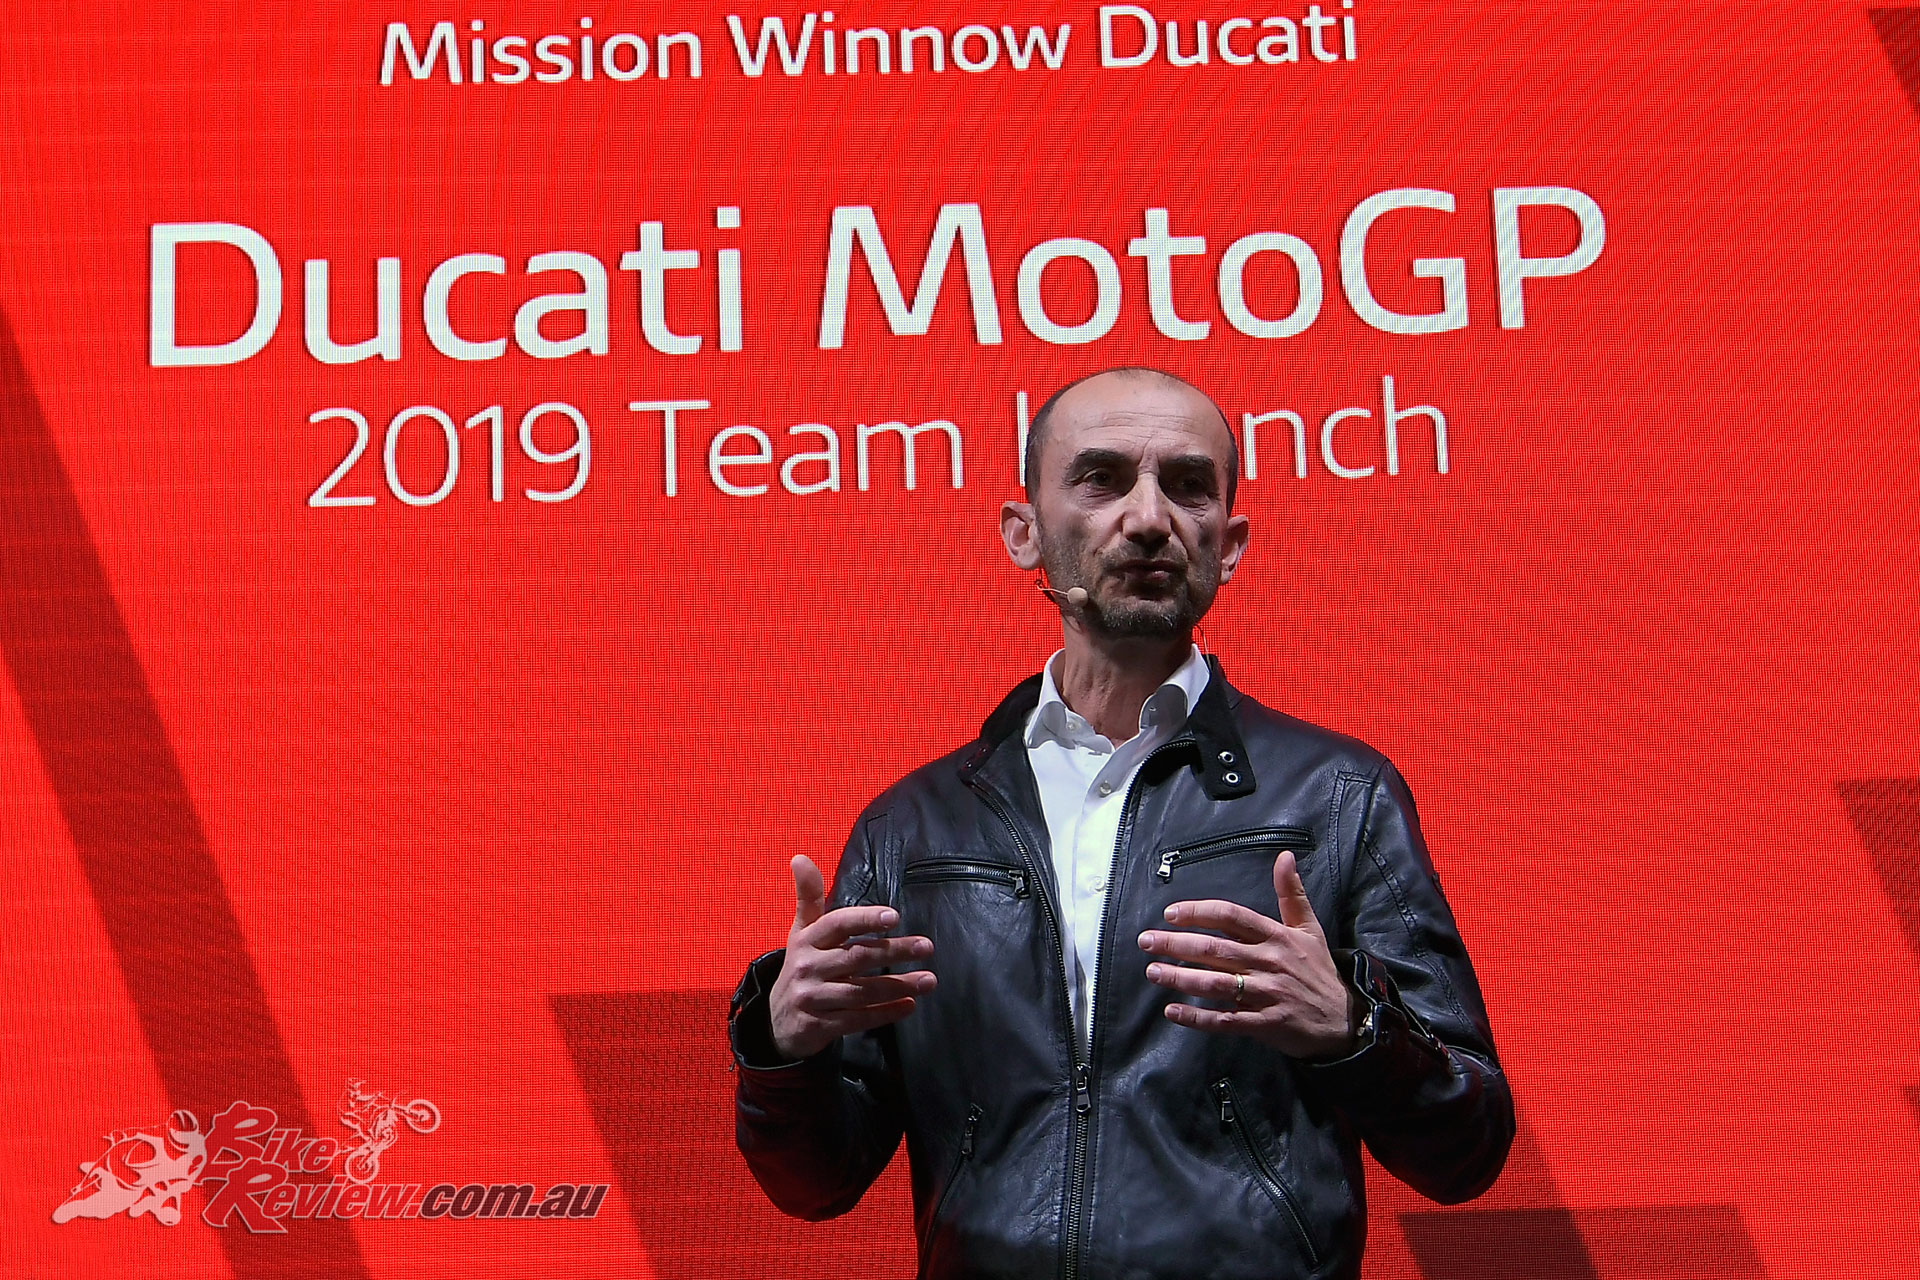 2019 Mission Winnow Ducati team